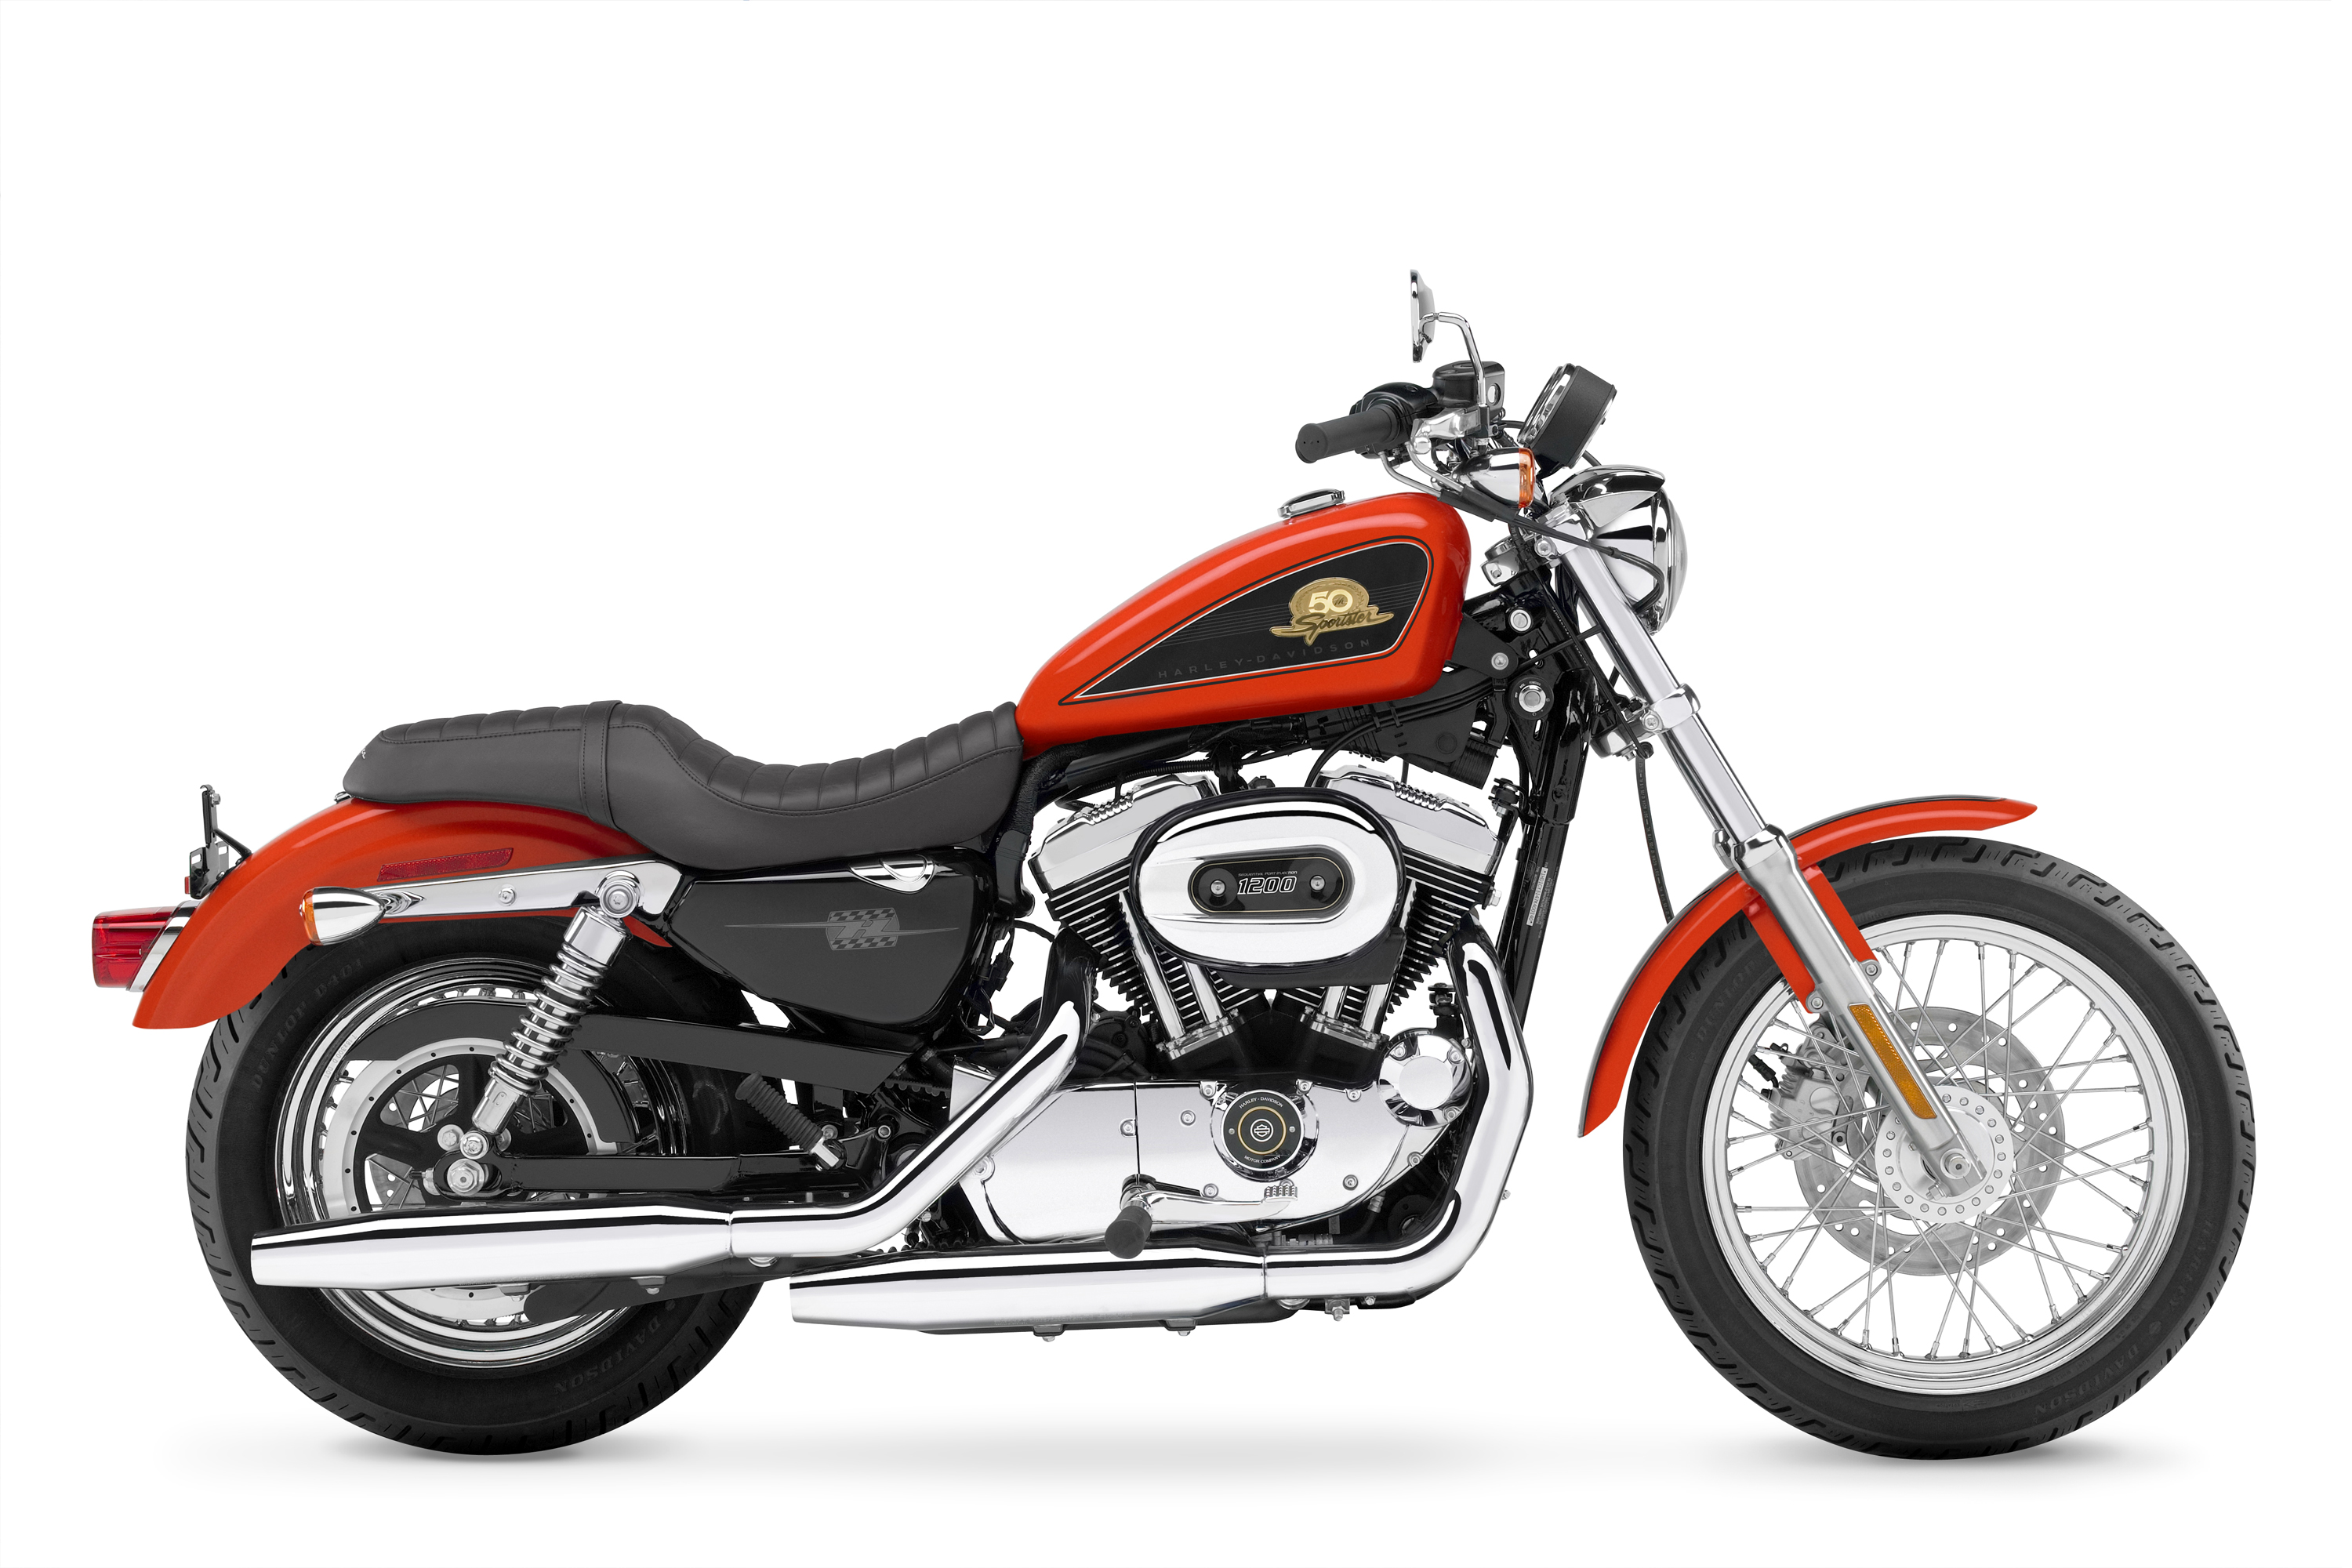 Descarga gratuita de fondo de pantalla para móvil de Motocicletas, Motocicleta, Harley Davidson, Vehículos.